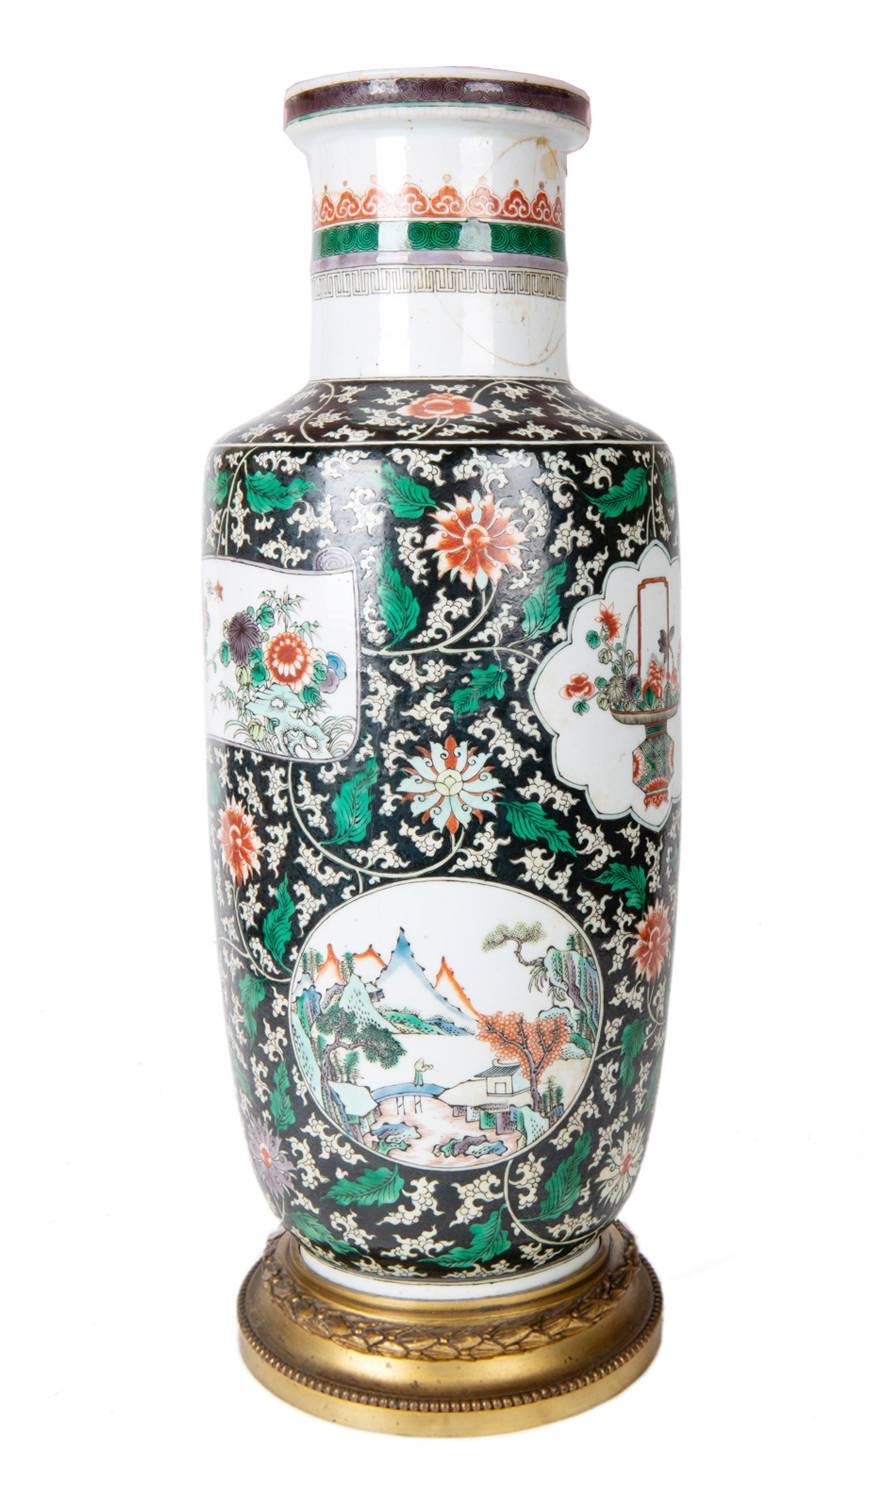 Un vase / lampe de très bonne qualité, datant du milieu du 19e siècle, de style chinois Famille verte. Fond noir et vert avec une décoration classique de fleurs et de feuilles. Les panneaux peints encastrés représentent des scènes de montagne